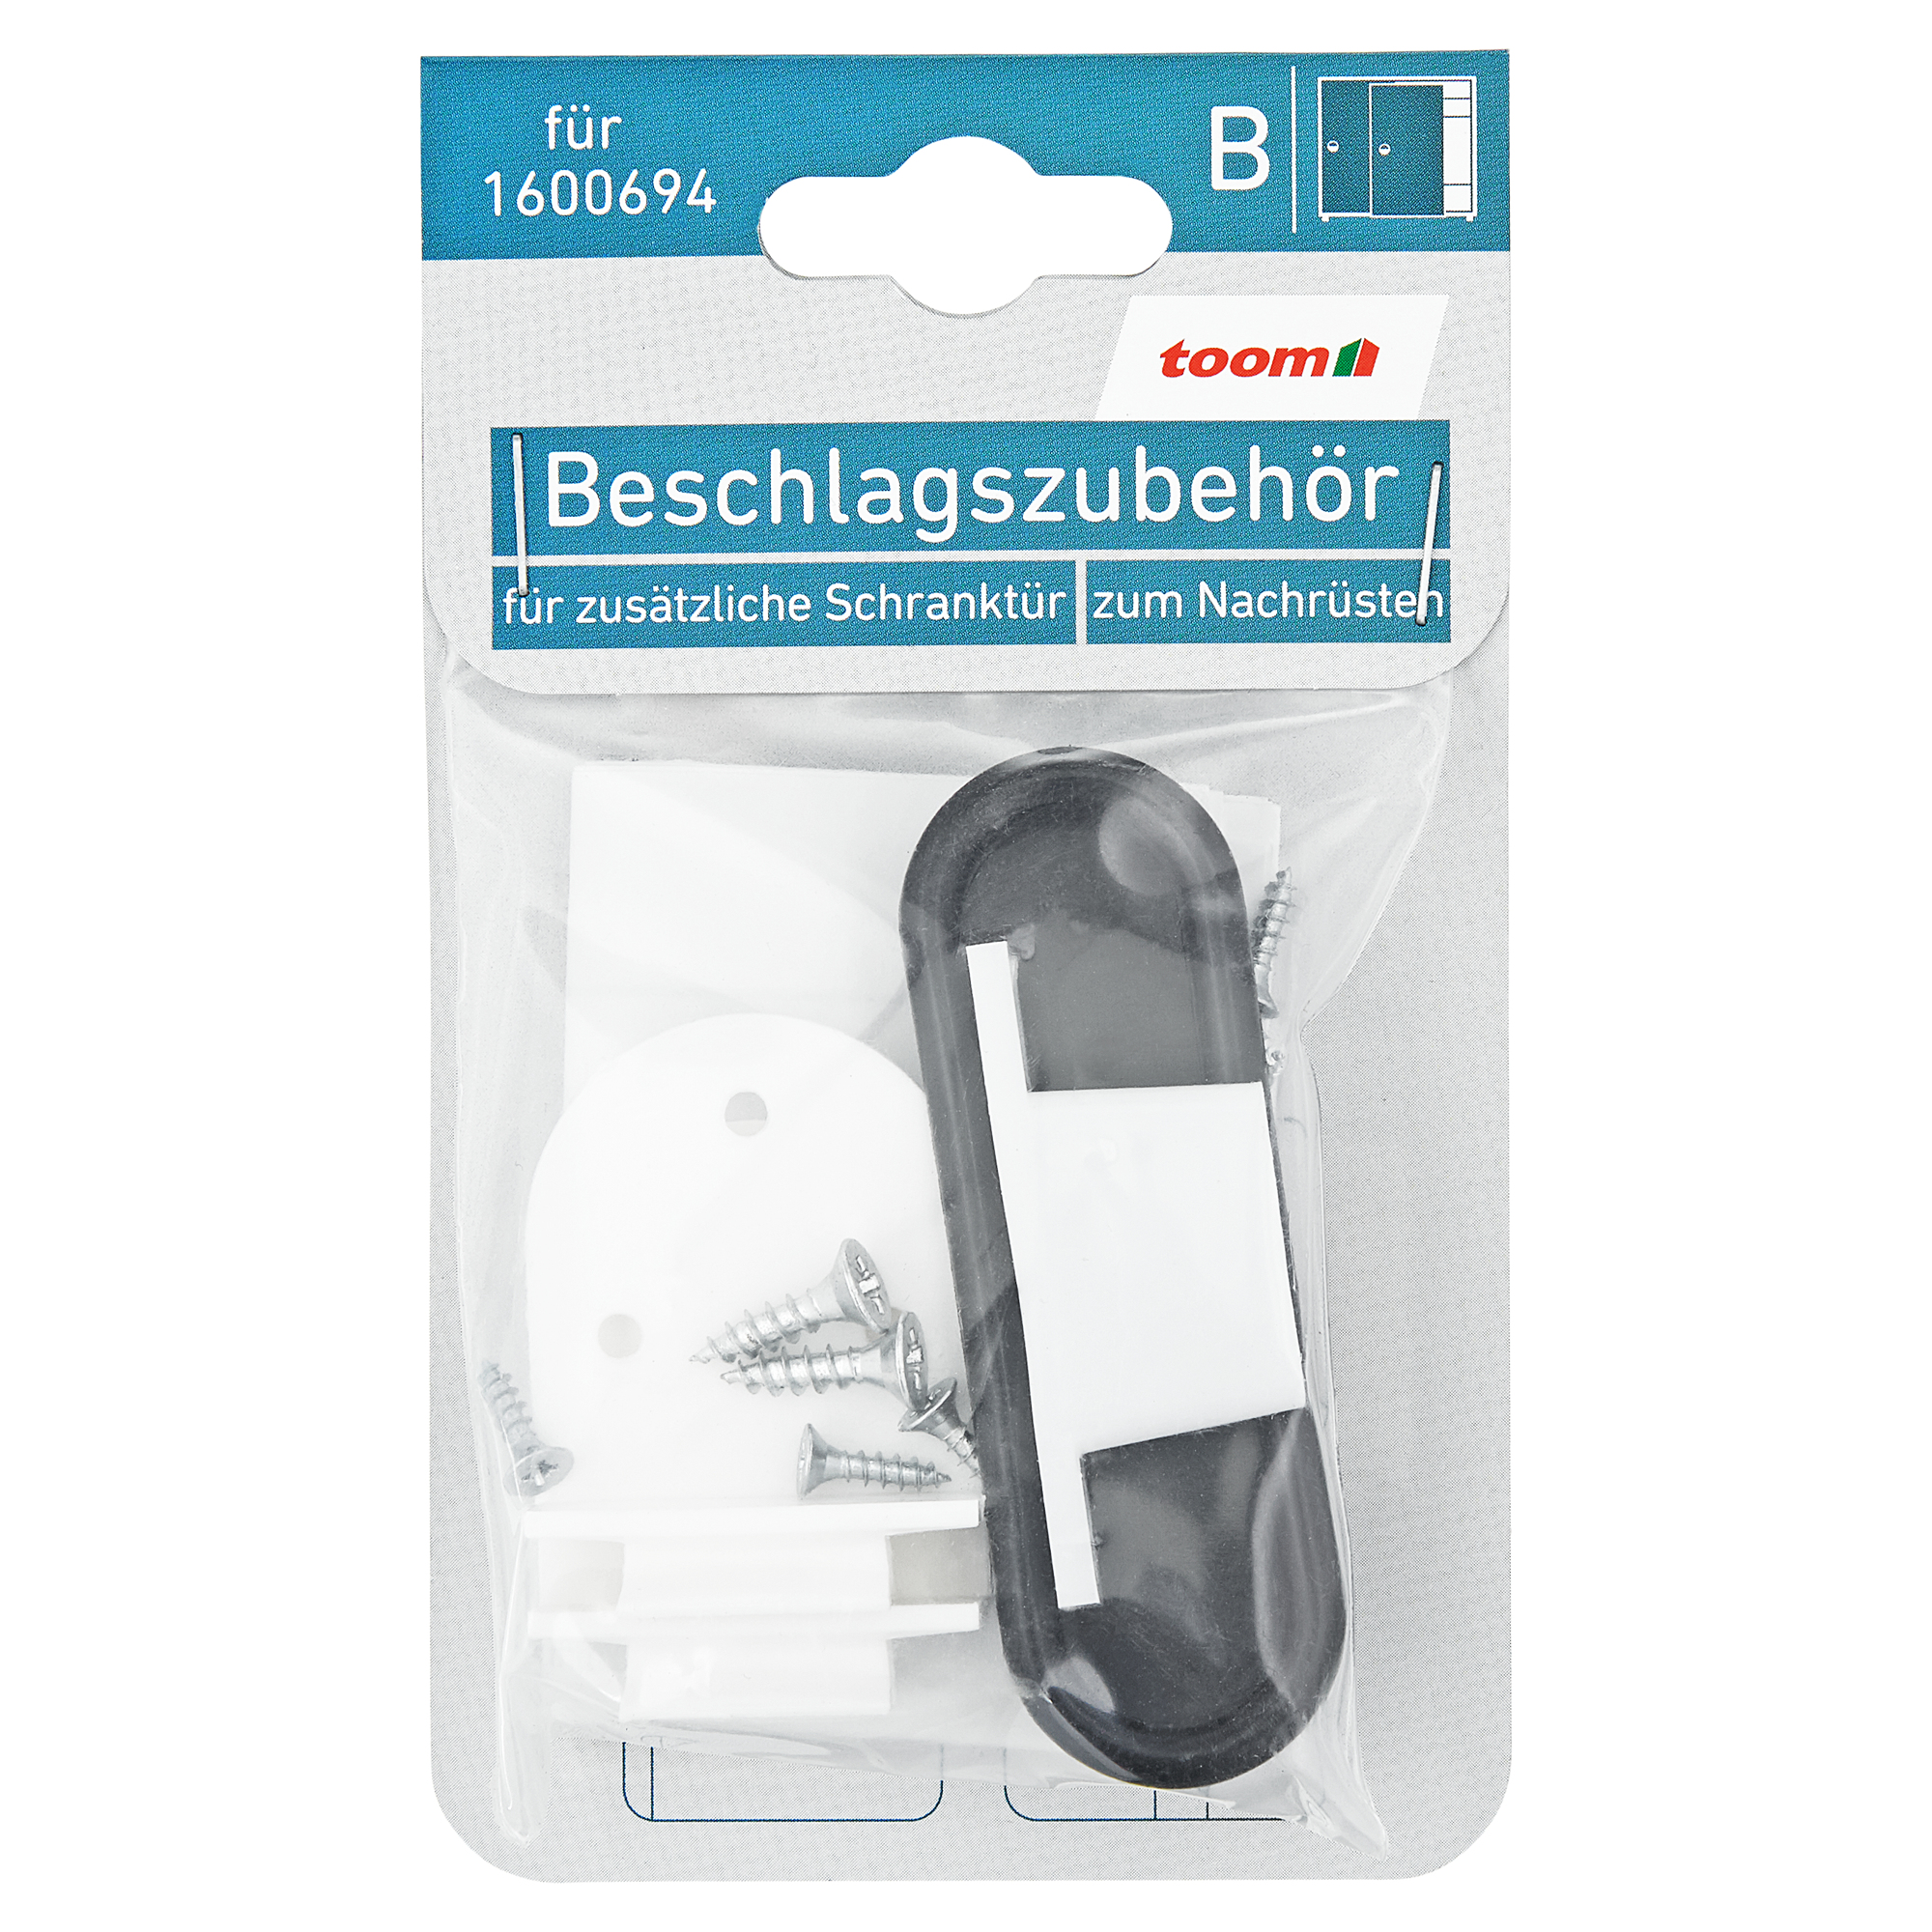 Beschlagszubehörset Schiebetür 4-tlg. + product picture